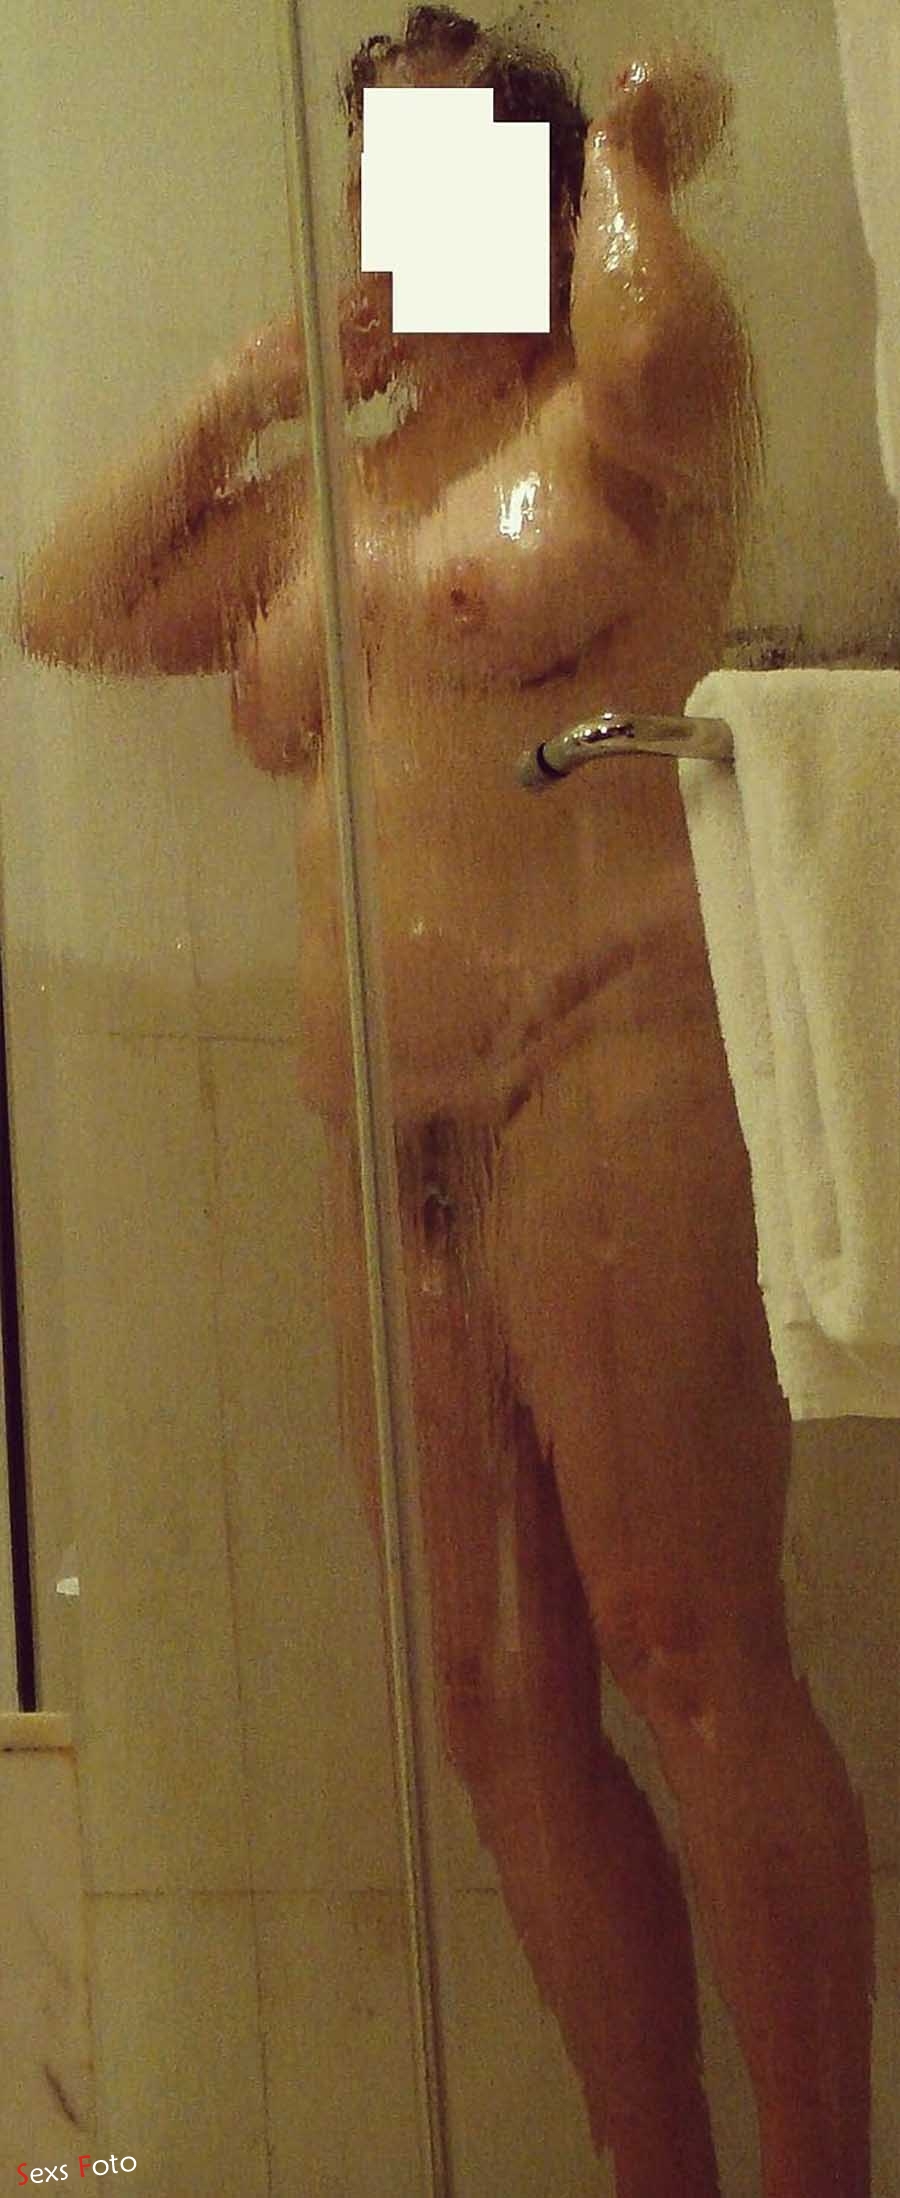 Голая женщина принимает душ на корточках